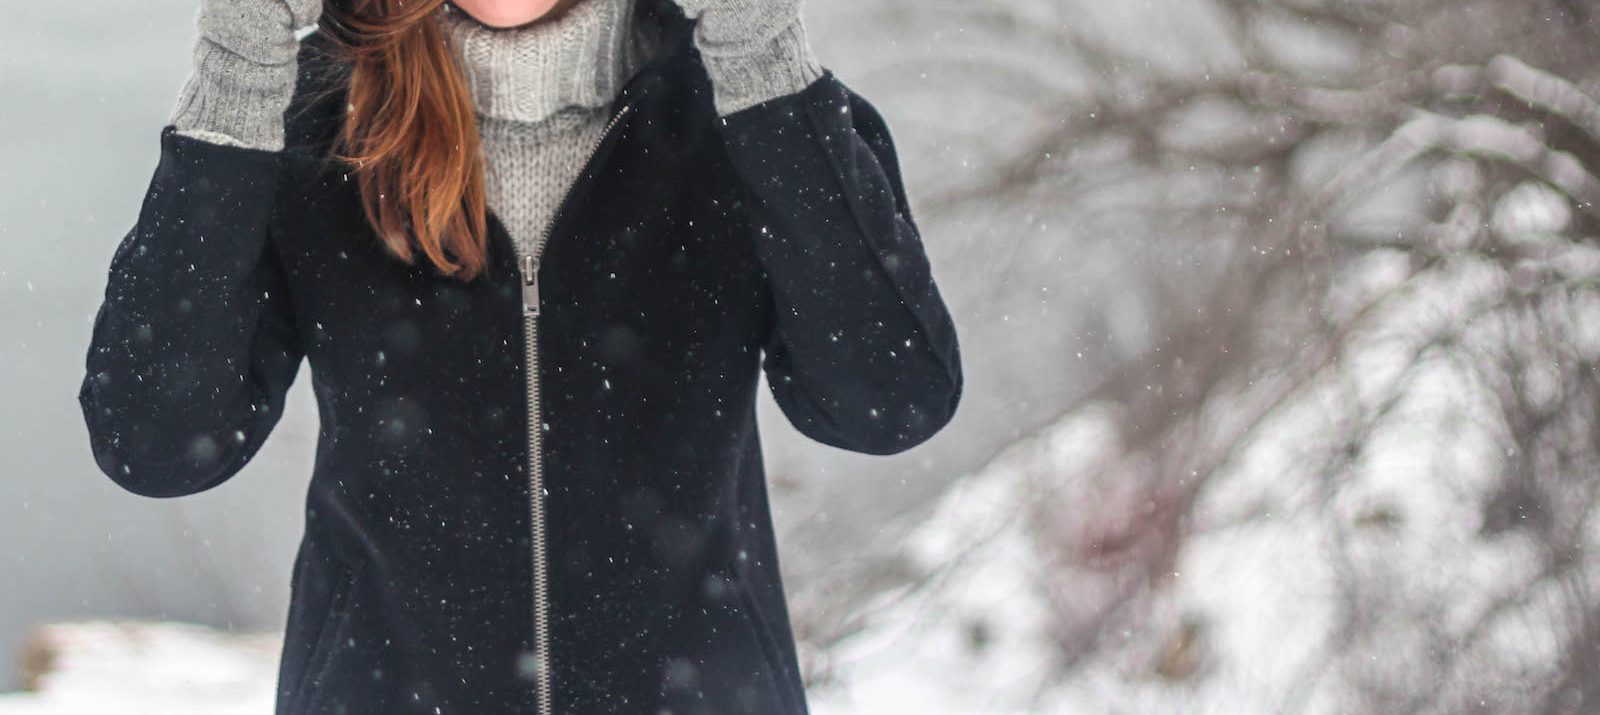 girl in winter coat in snow